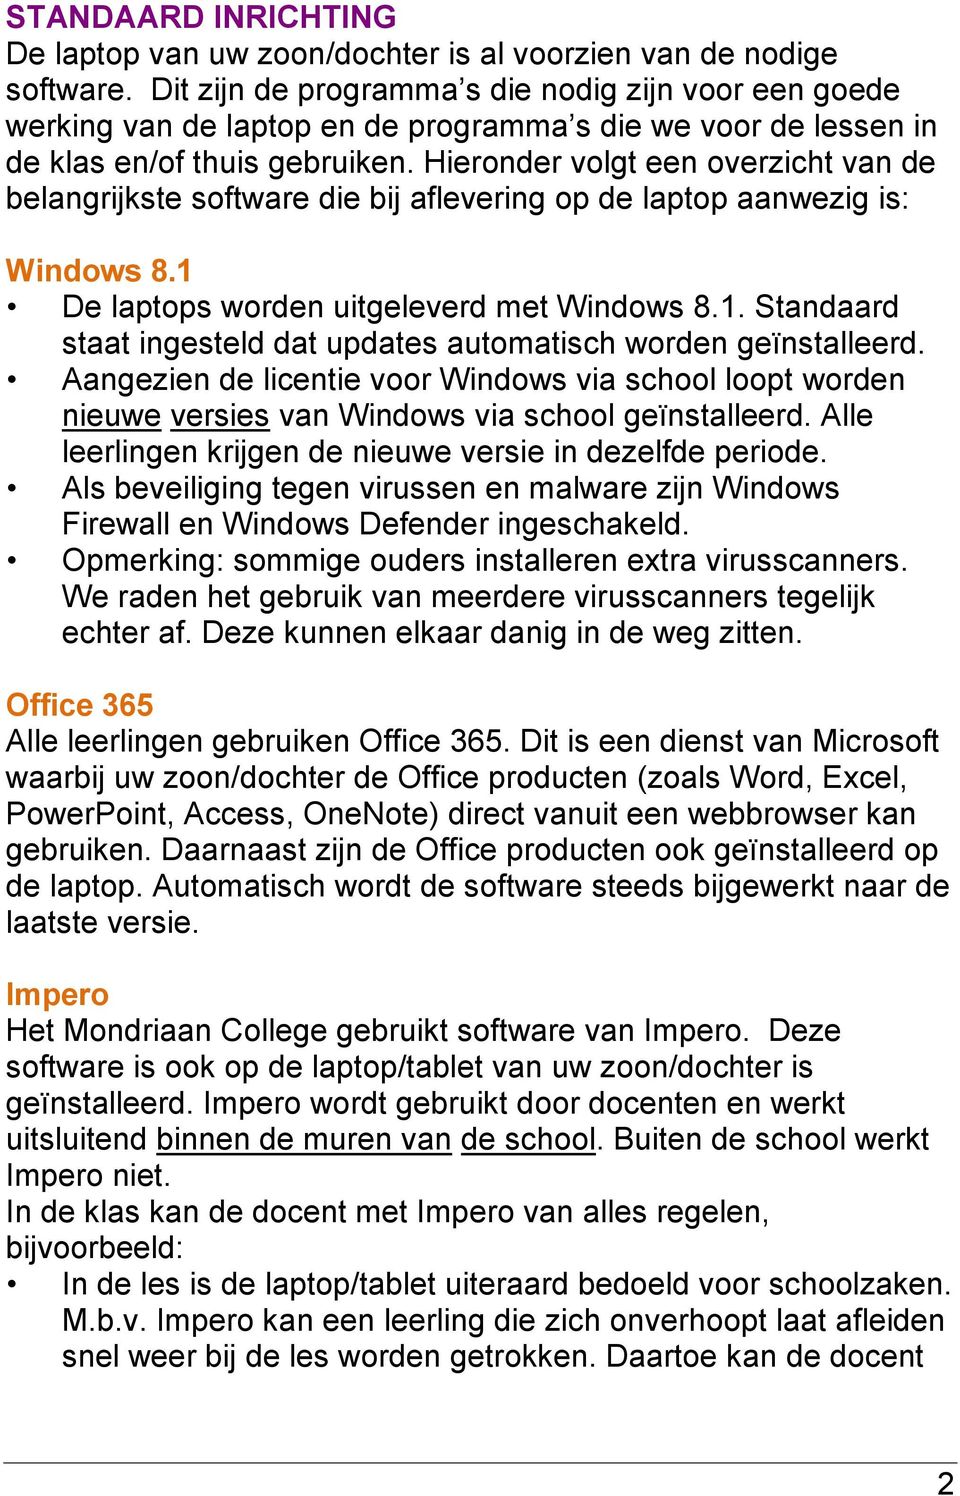 Hieronder volgt een overzicht van de belangrijkste software die bij aflevering op de laptop aanwezig is: Windows 8.1 De laptops worden uitgeleverd met Windows 8.1. Standaard staat ingesteld dat updates automatisch worden geïnstalleerd.